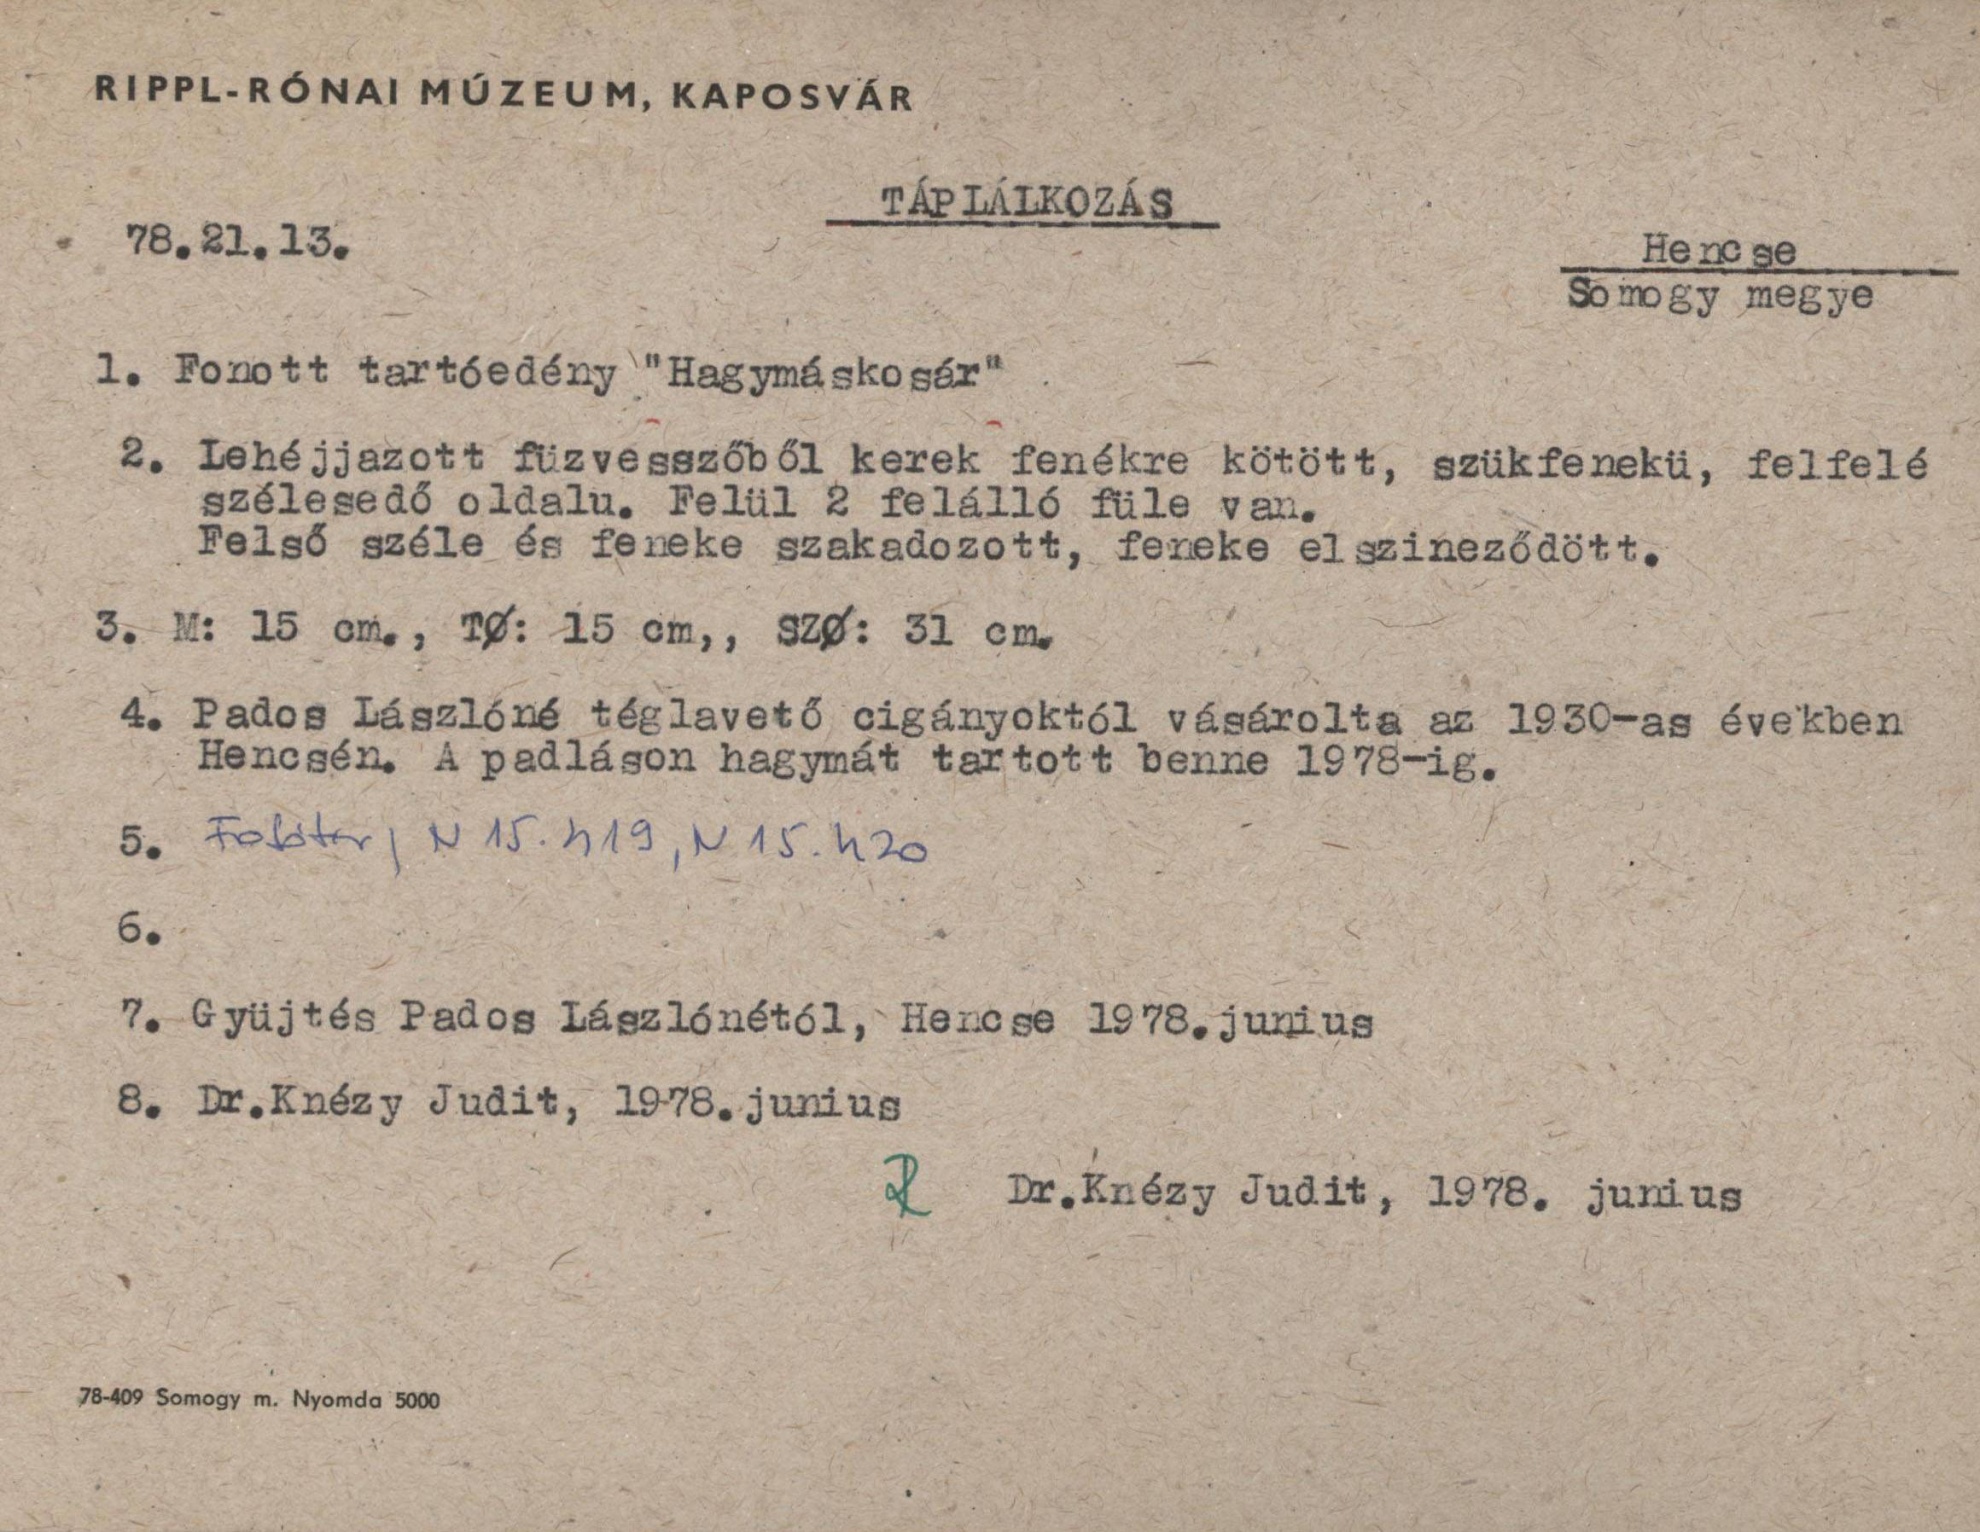 "Hagymáskosár" fonott tartóedény (Rippl-Rónai Múzeum CC BY-NC-SA)